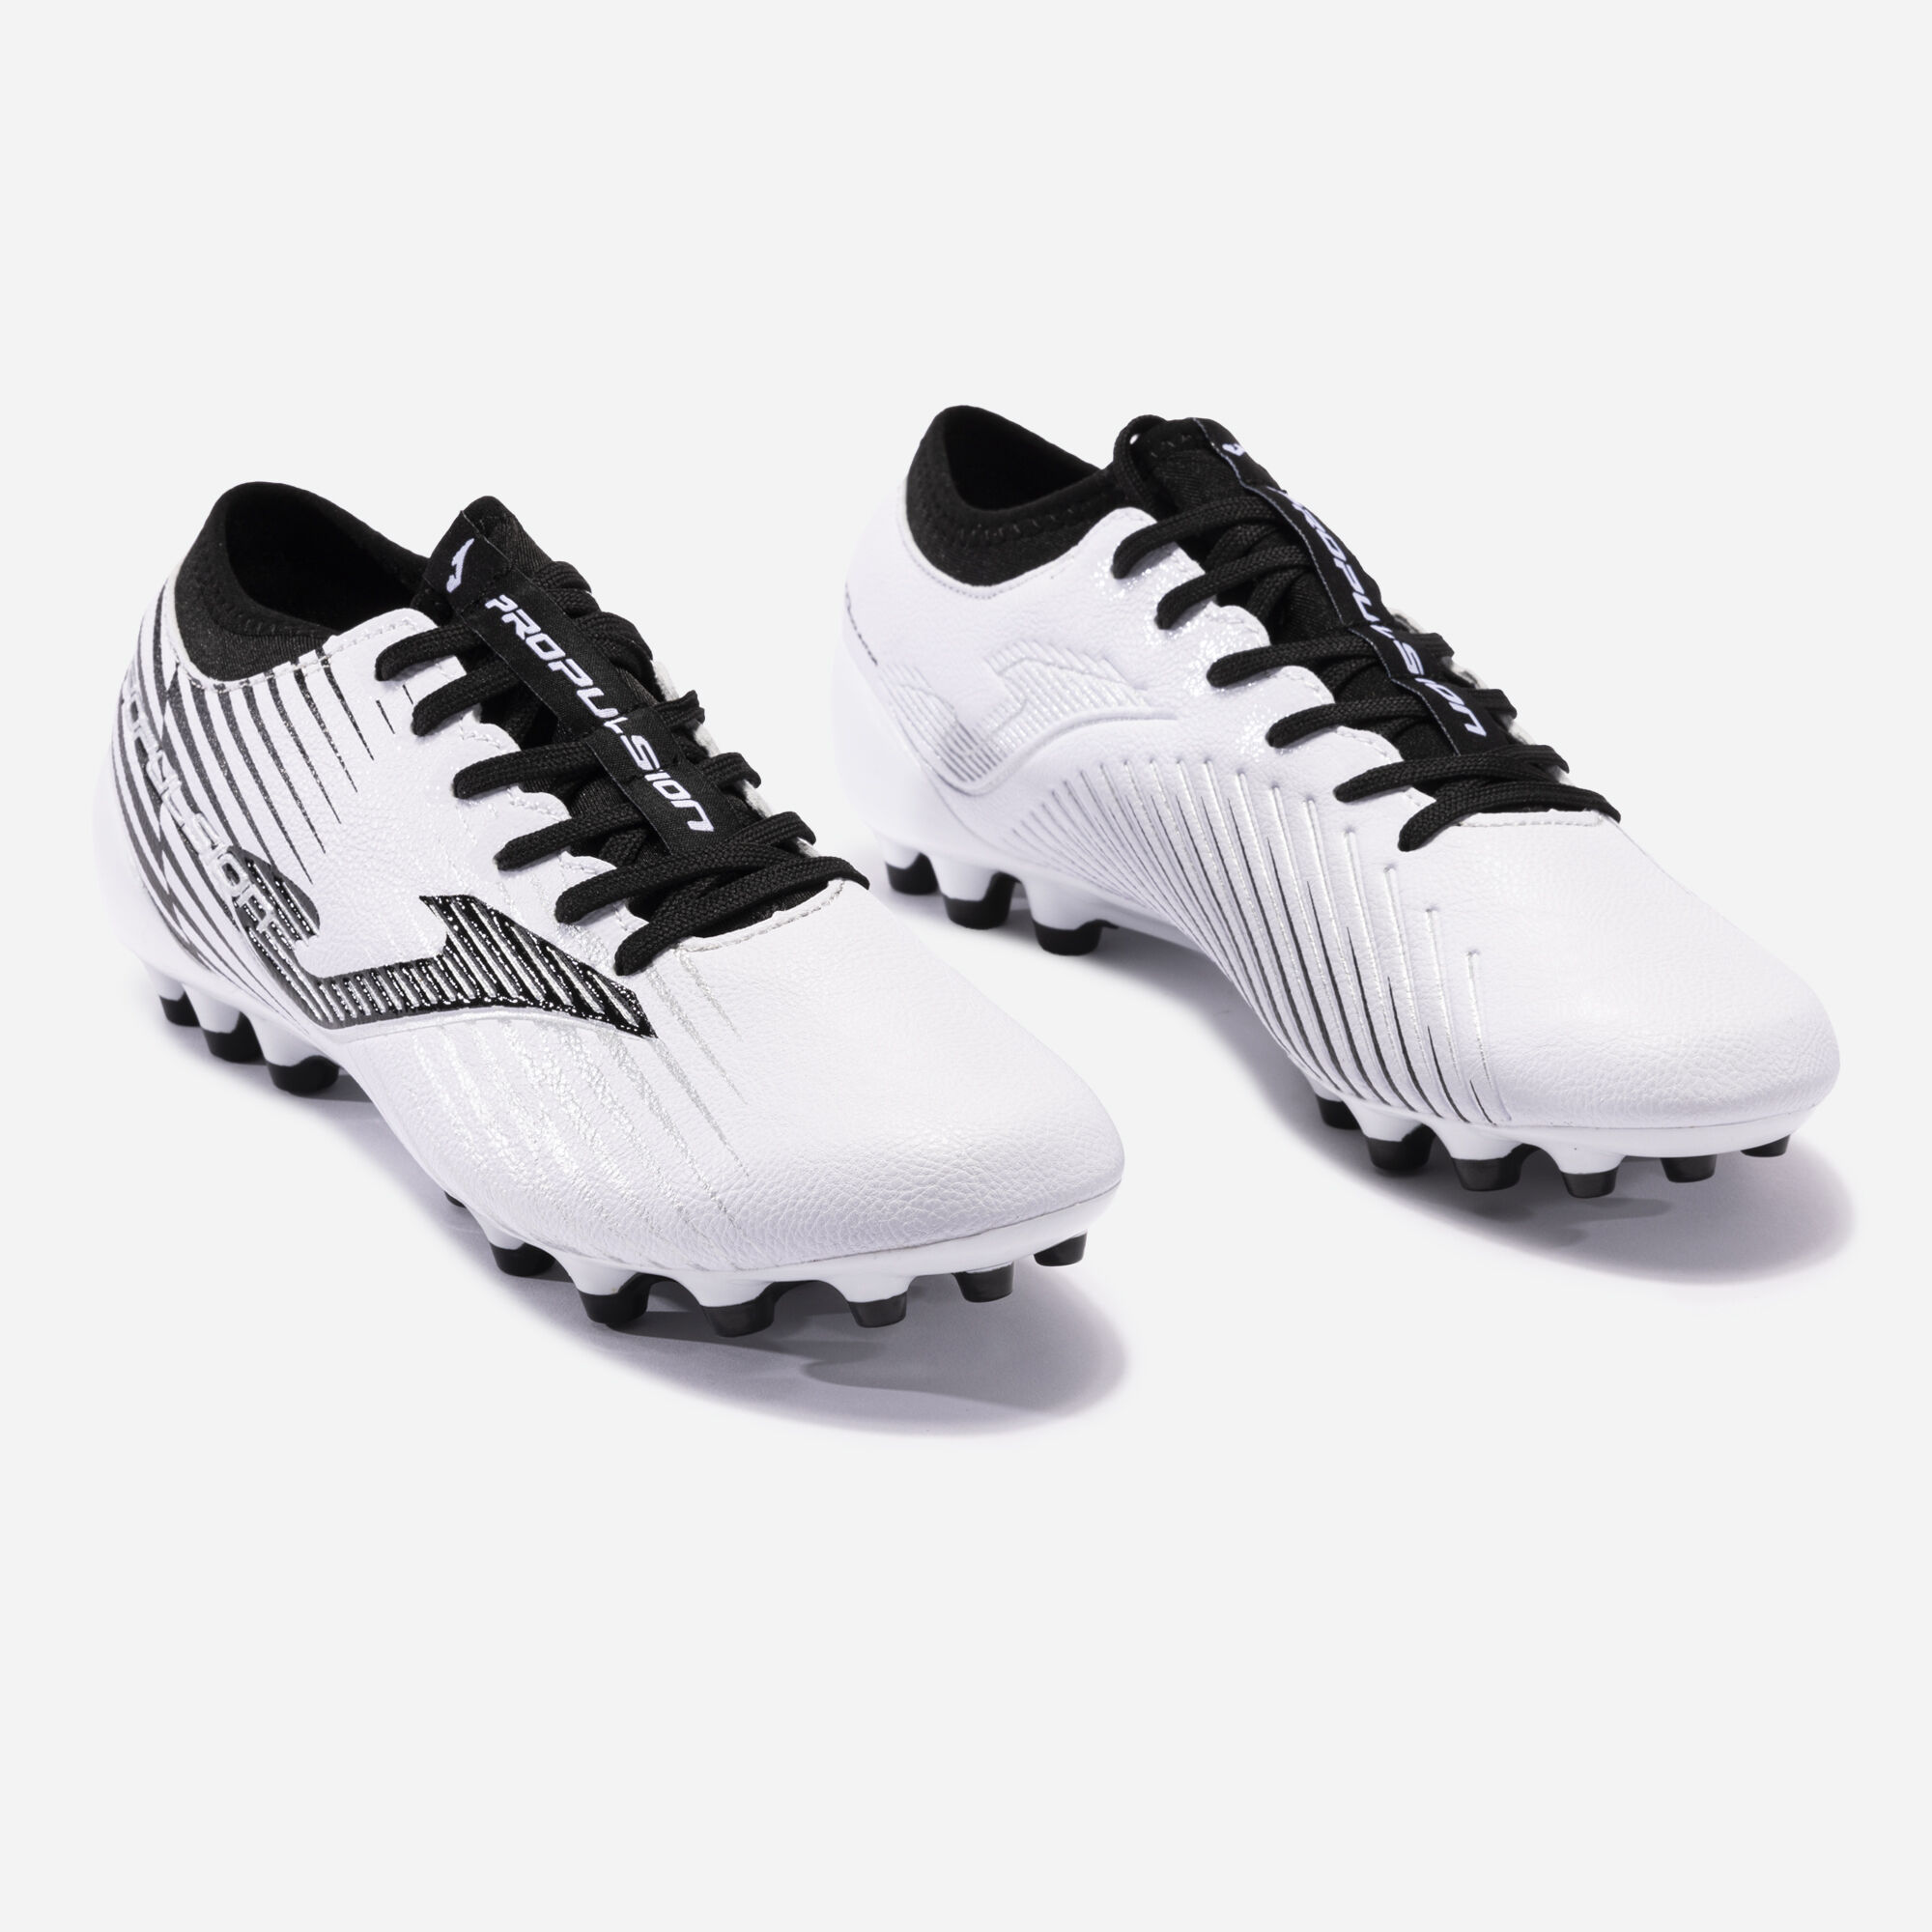 Bolsa para botas de fútbol Kipsta negro